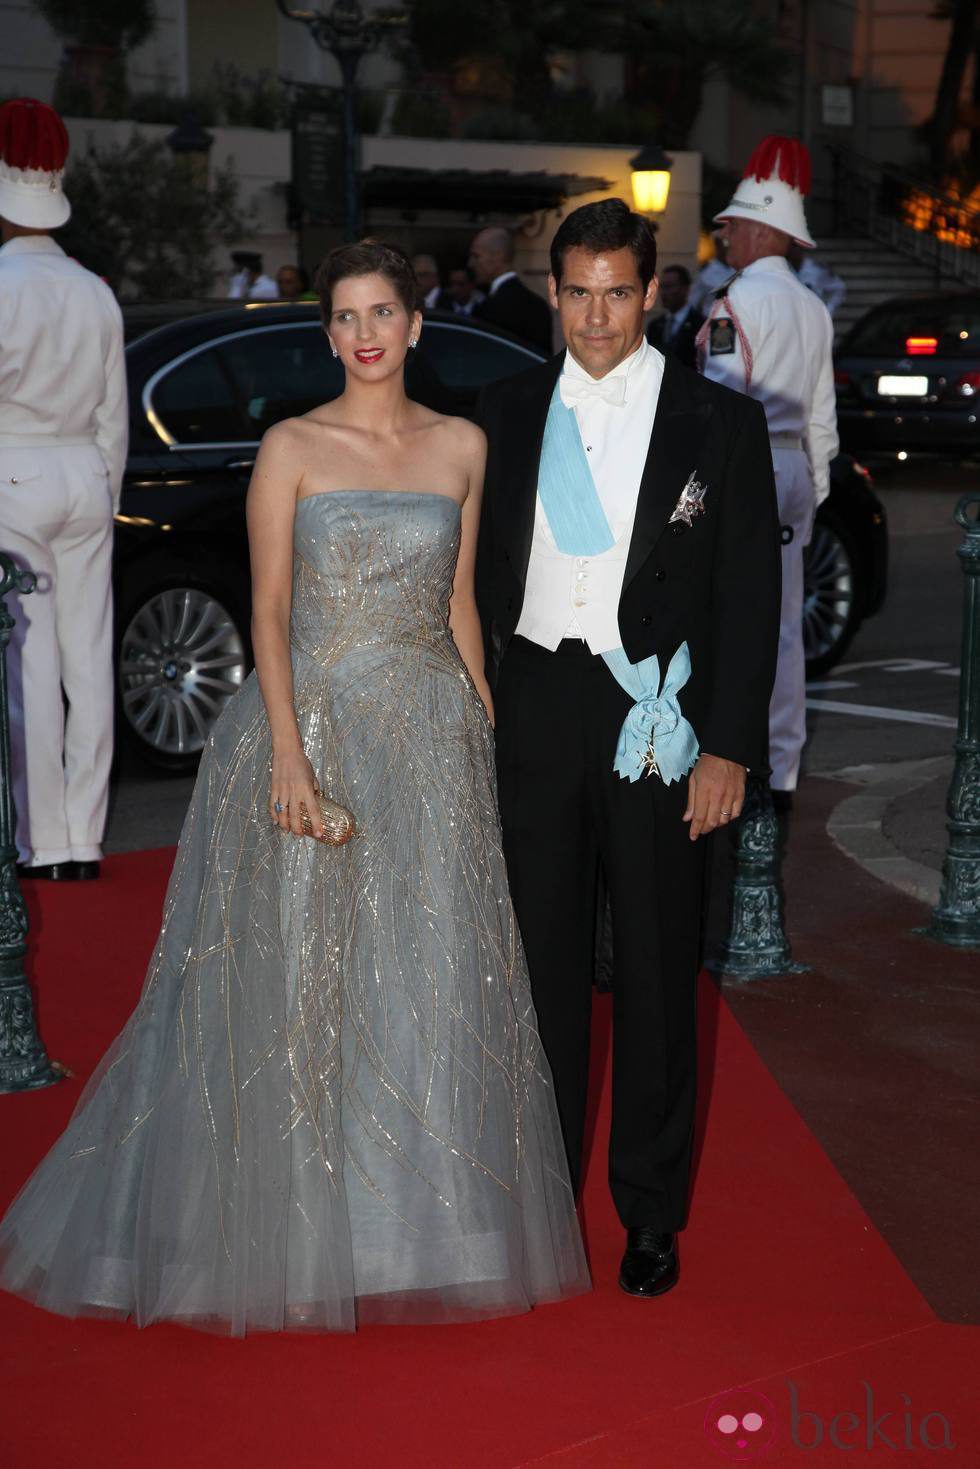 Luis Alfonso de Borbón y Margarita Vargas en la cena de gala en Mónaco